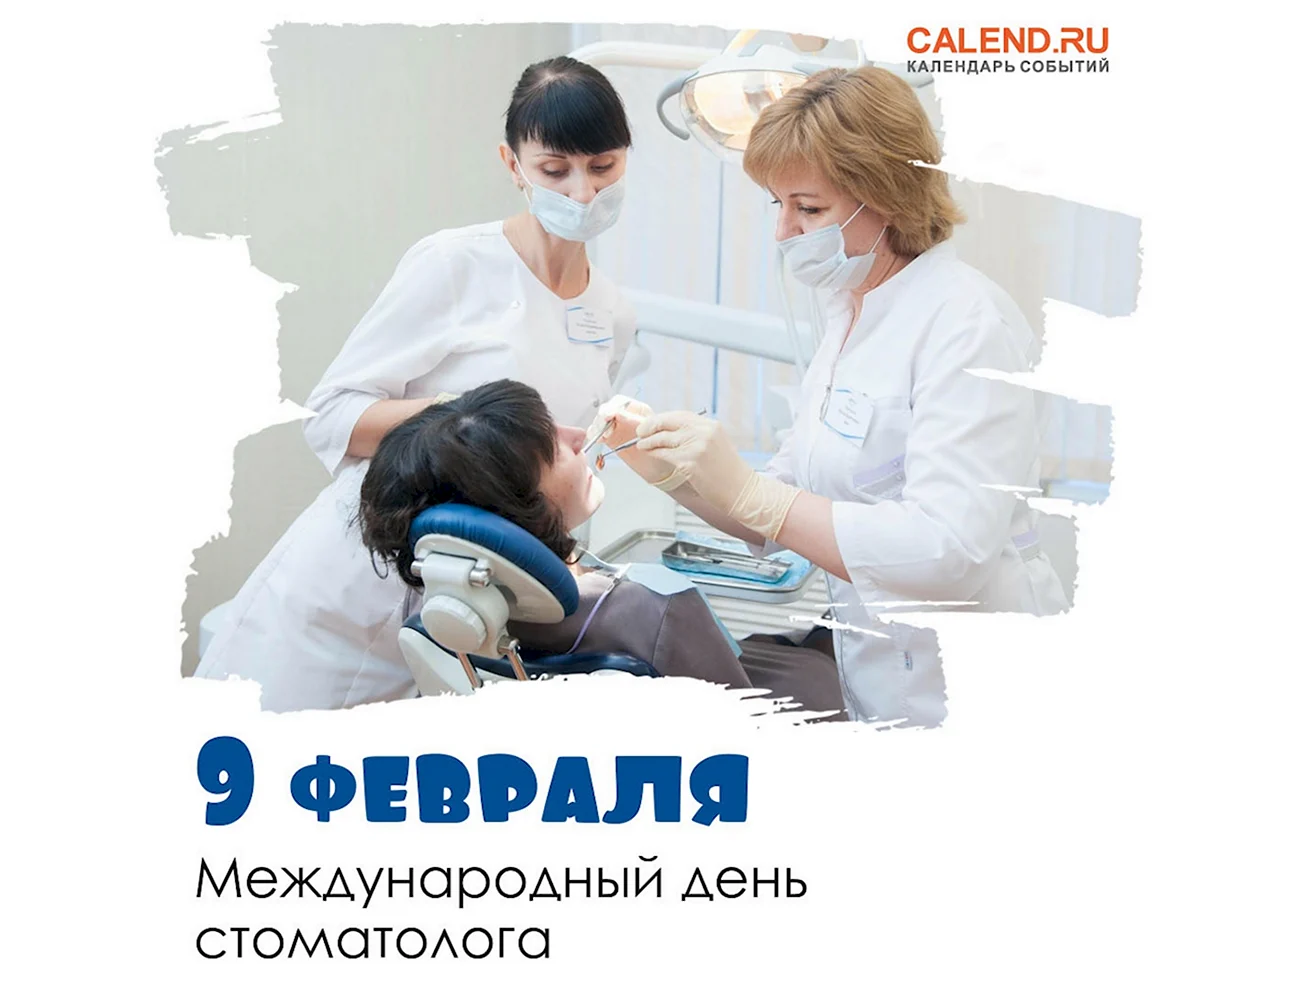 9 Февраля Международный день стоматолога. Поздравление